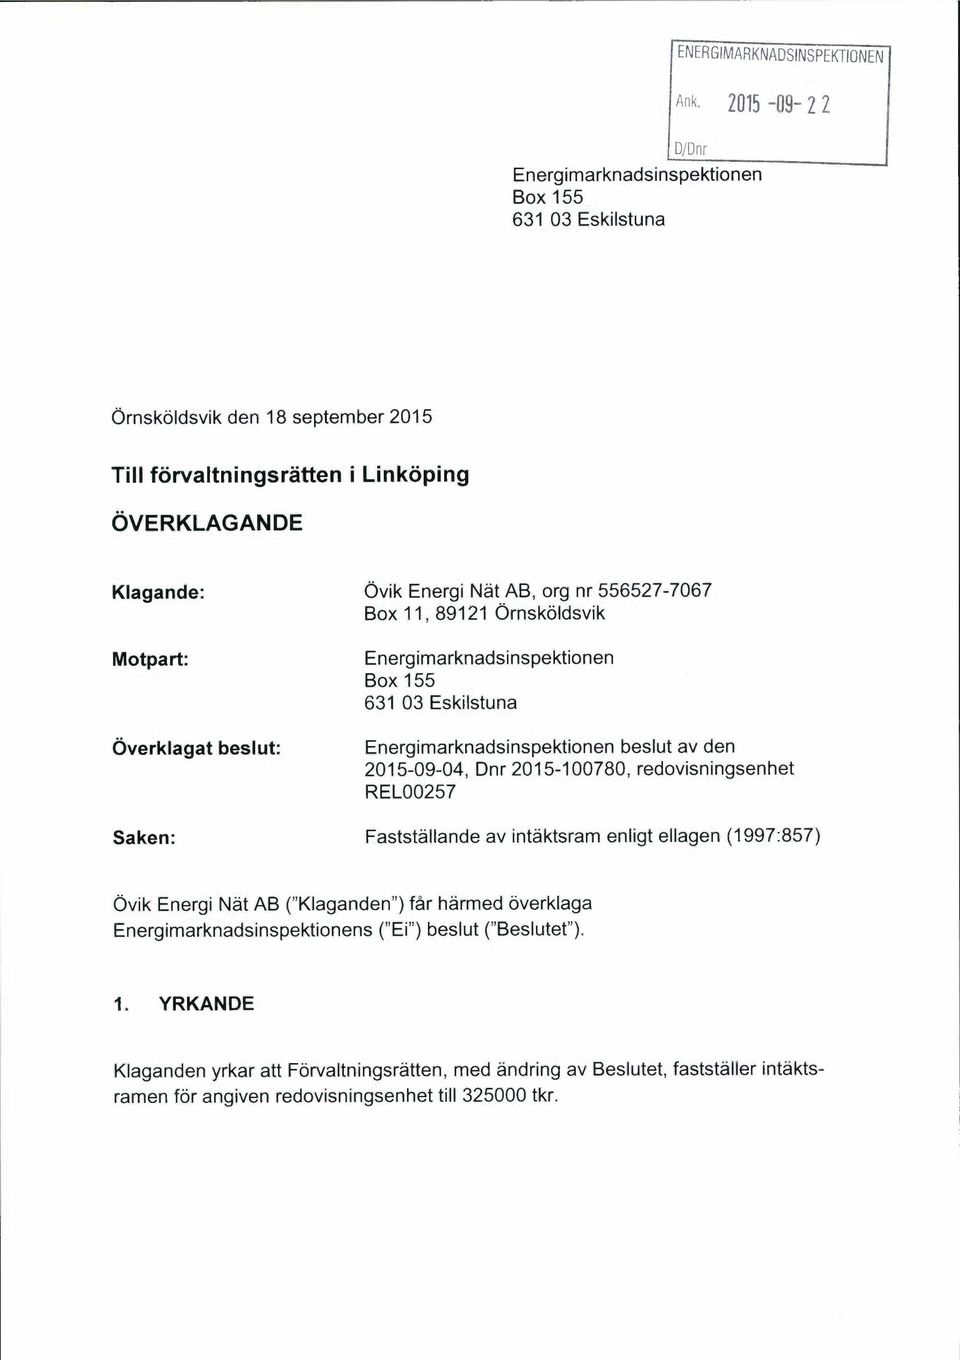 nr 556527-7067 Box 11, 89121 Ornskoldsvik Motpart: Overklagat beslut: Energimarknadsinspektionen Box 155 631 03 Eskilstuna Energimarknadsinspektionen beslut av den 2015-09-04, Dnr